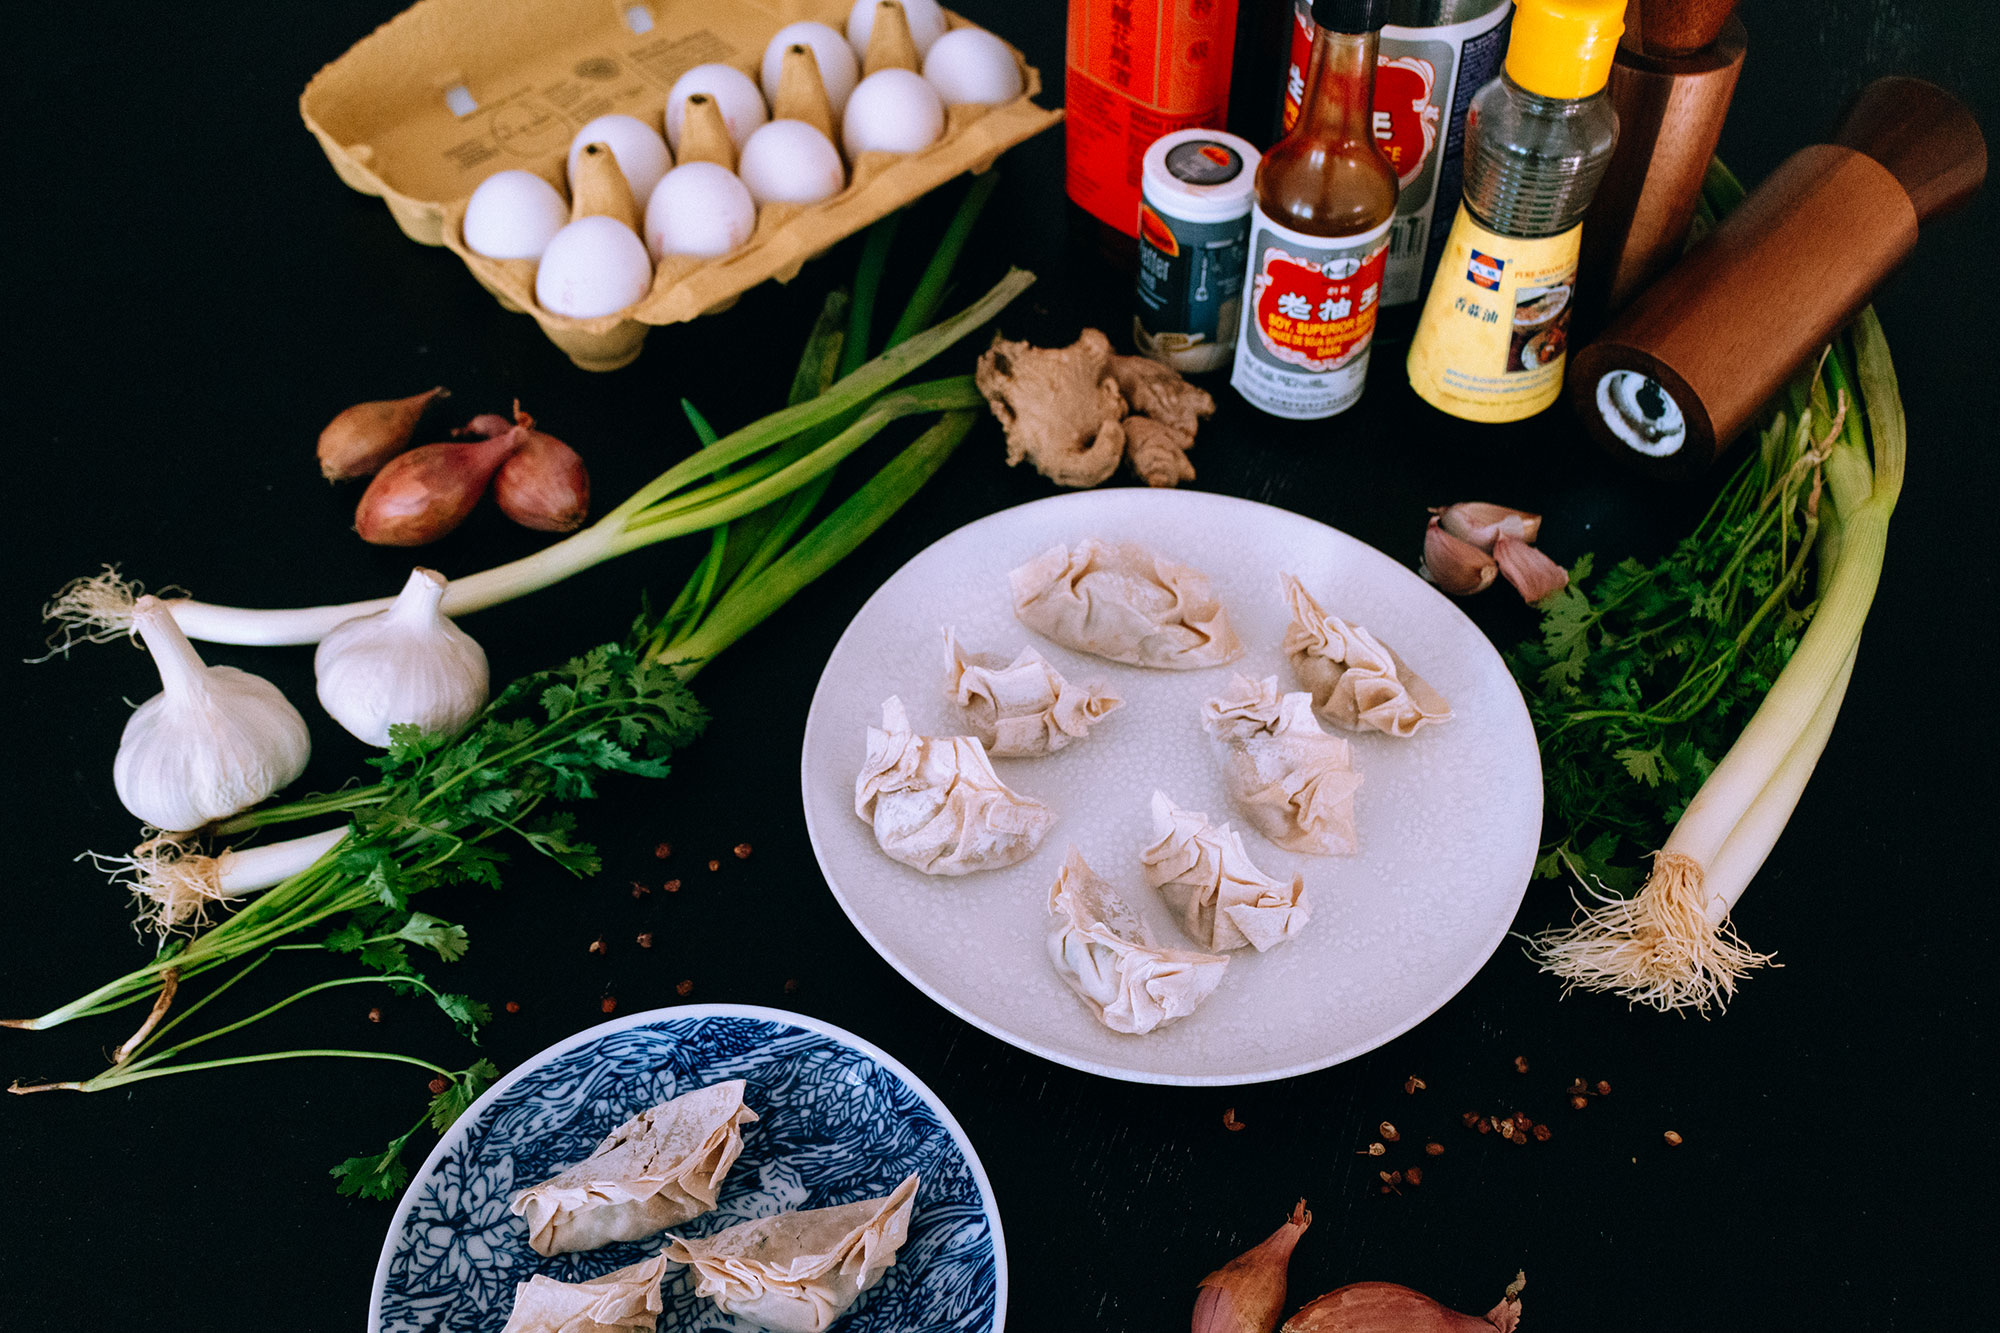 Juicy Pork & Shrimp Dumplings Recipe / Authentische Schweine-Shrimp Dumplings Rezept für zu Hause / iHeartAlice.com - Travel, Lifestyle, Food & Fashionblog by Alice M. Huynh / Chinese Dumplings (Dim Sum)